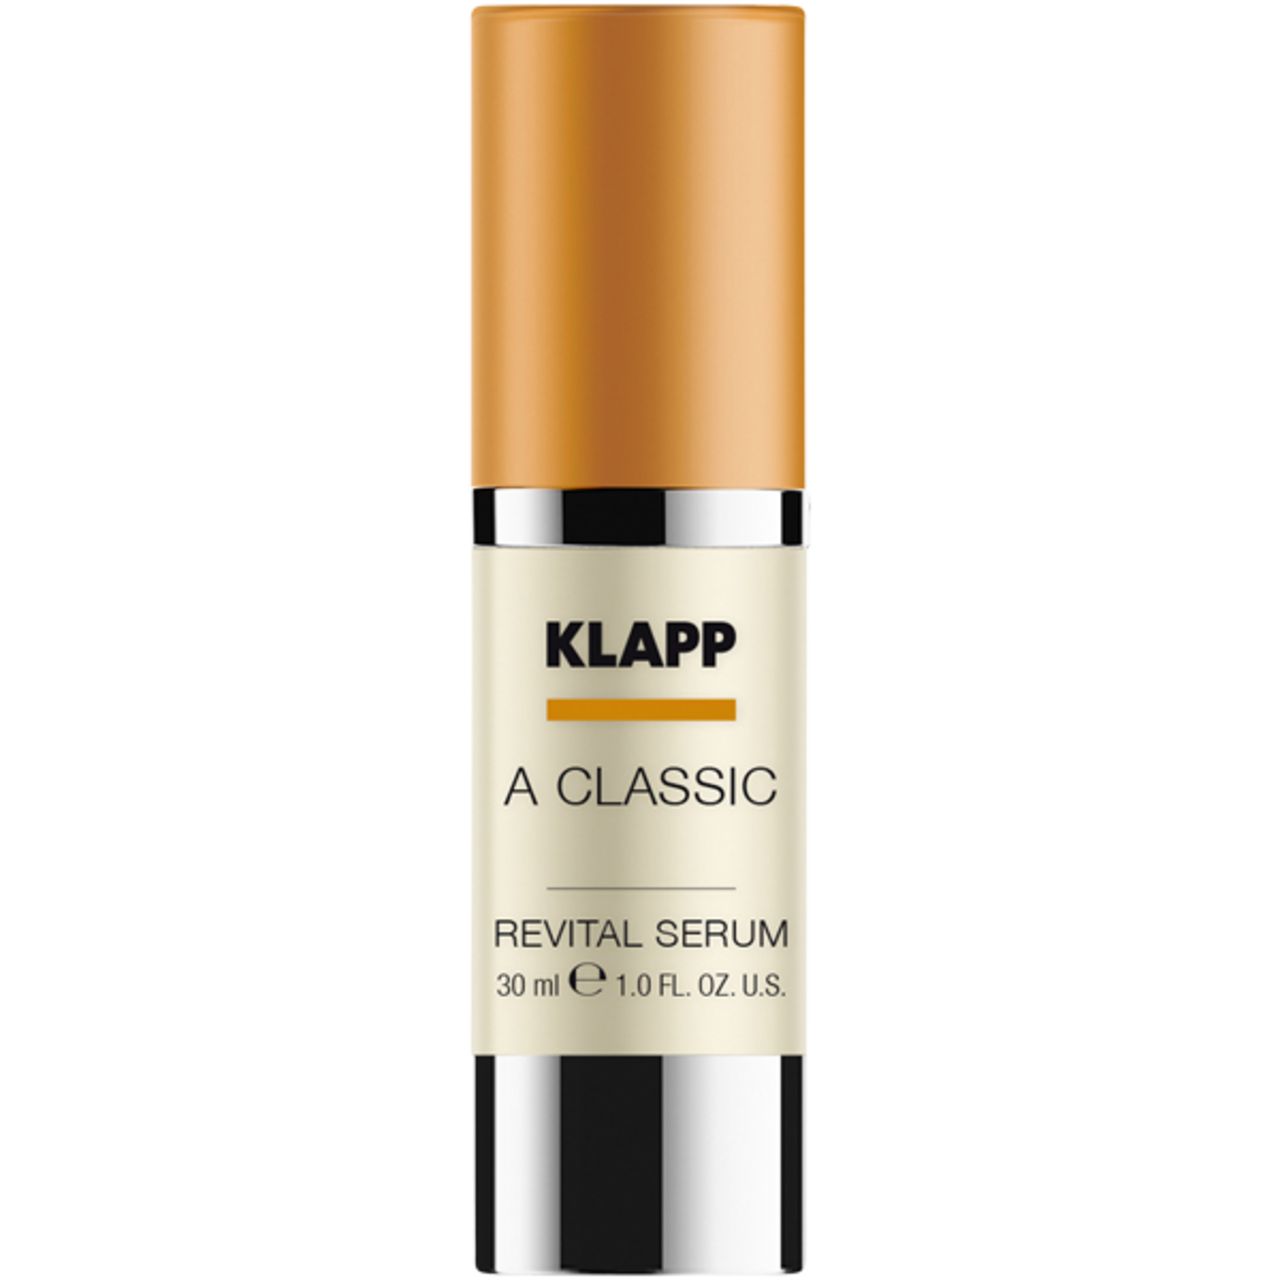 Klapp, A Classic Revital Serum